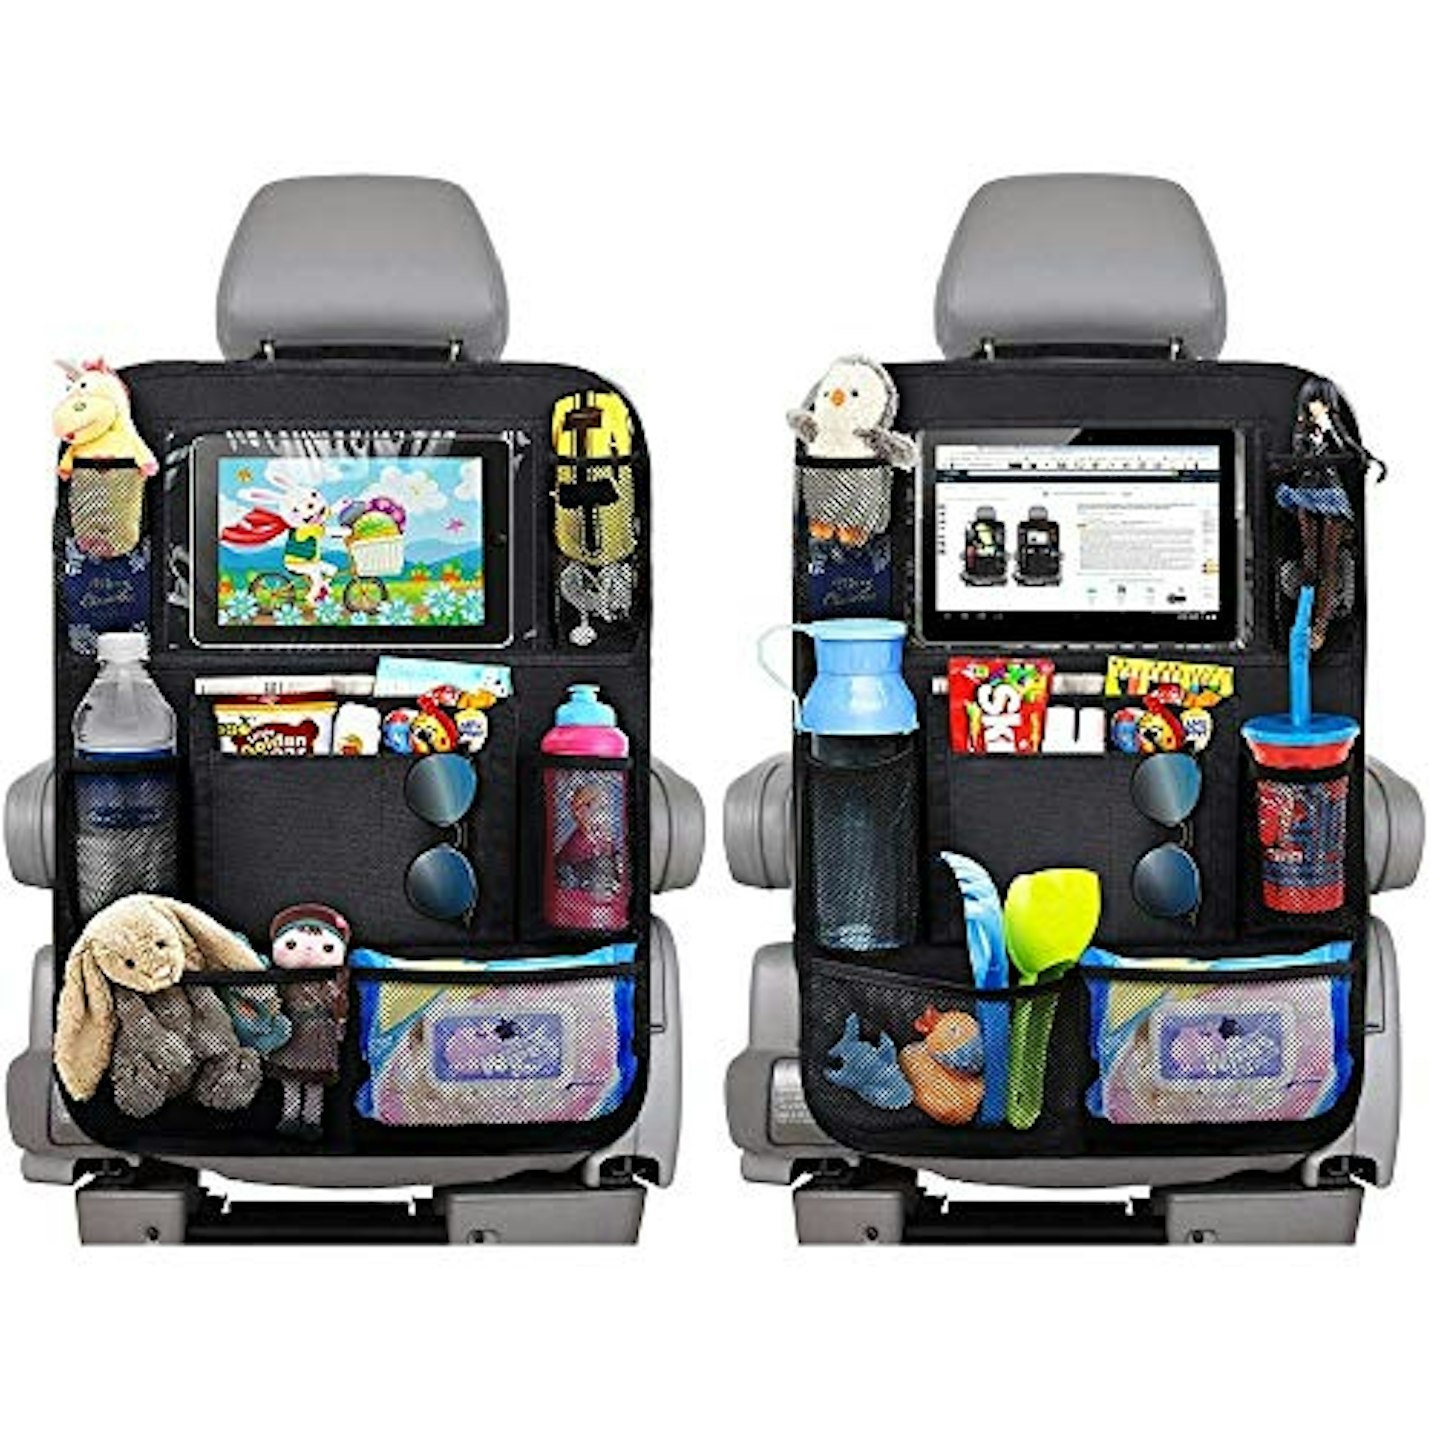 Best car seat organiser EFULL 2pc Car Back Seat Organiser for Kids